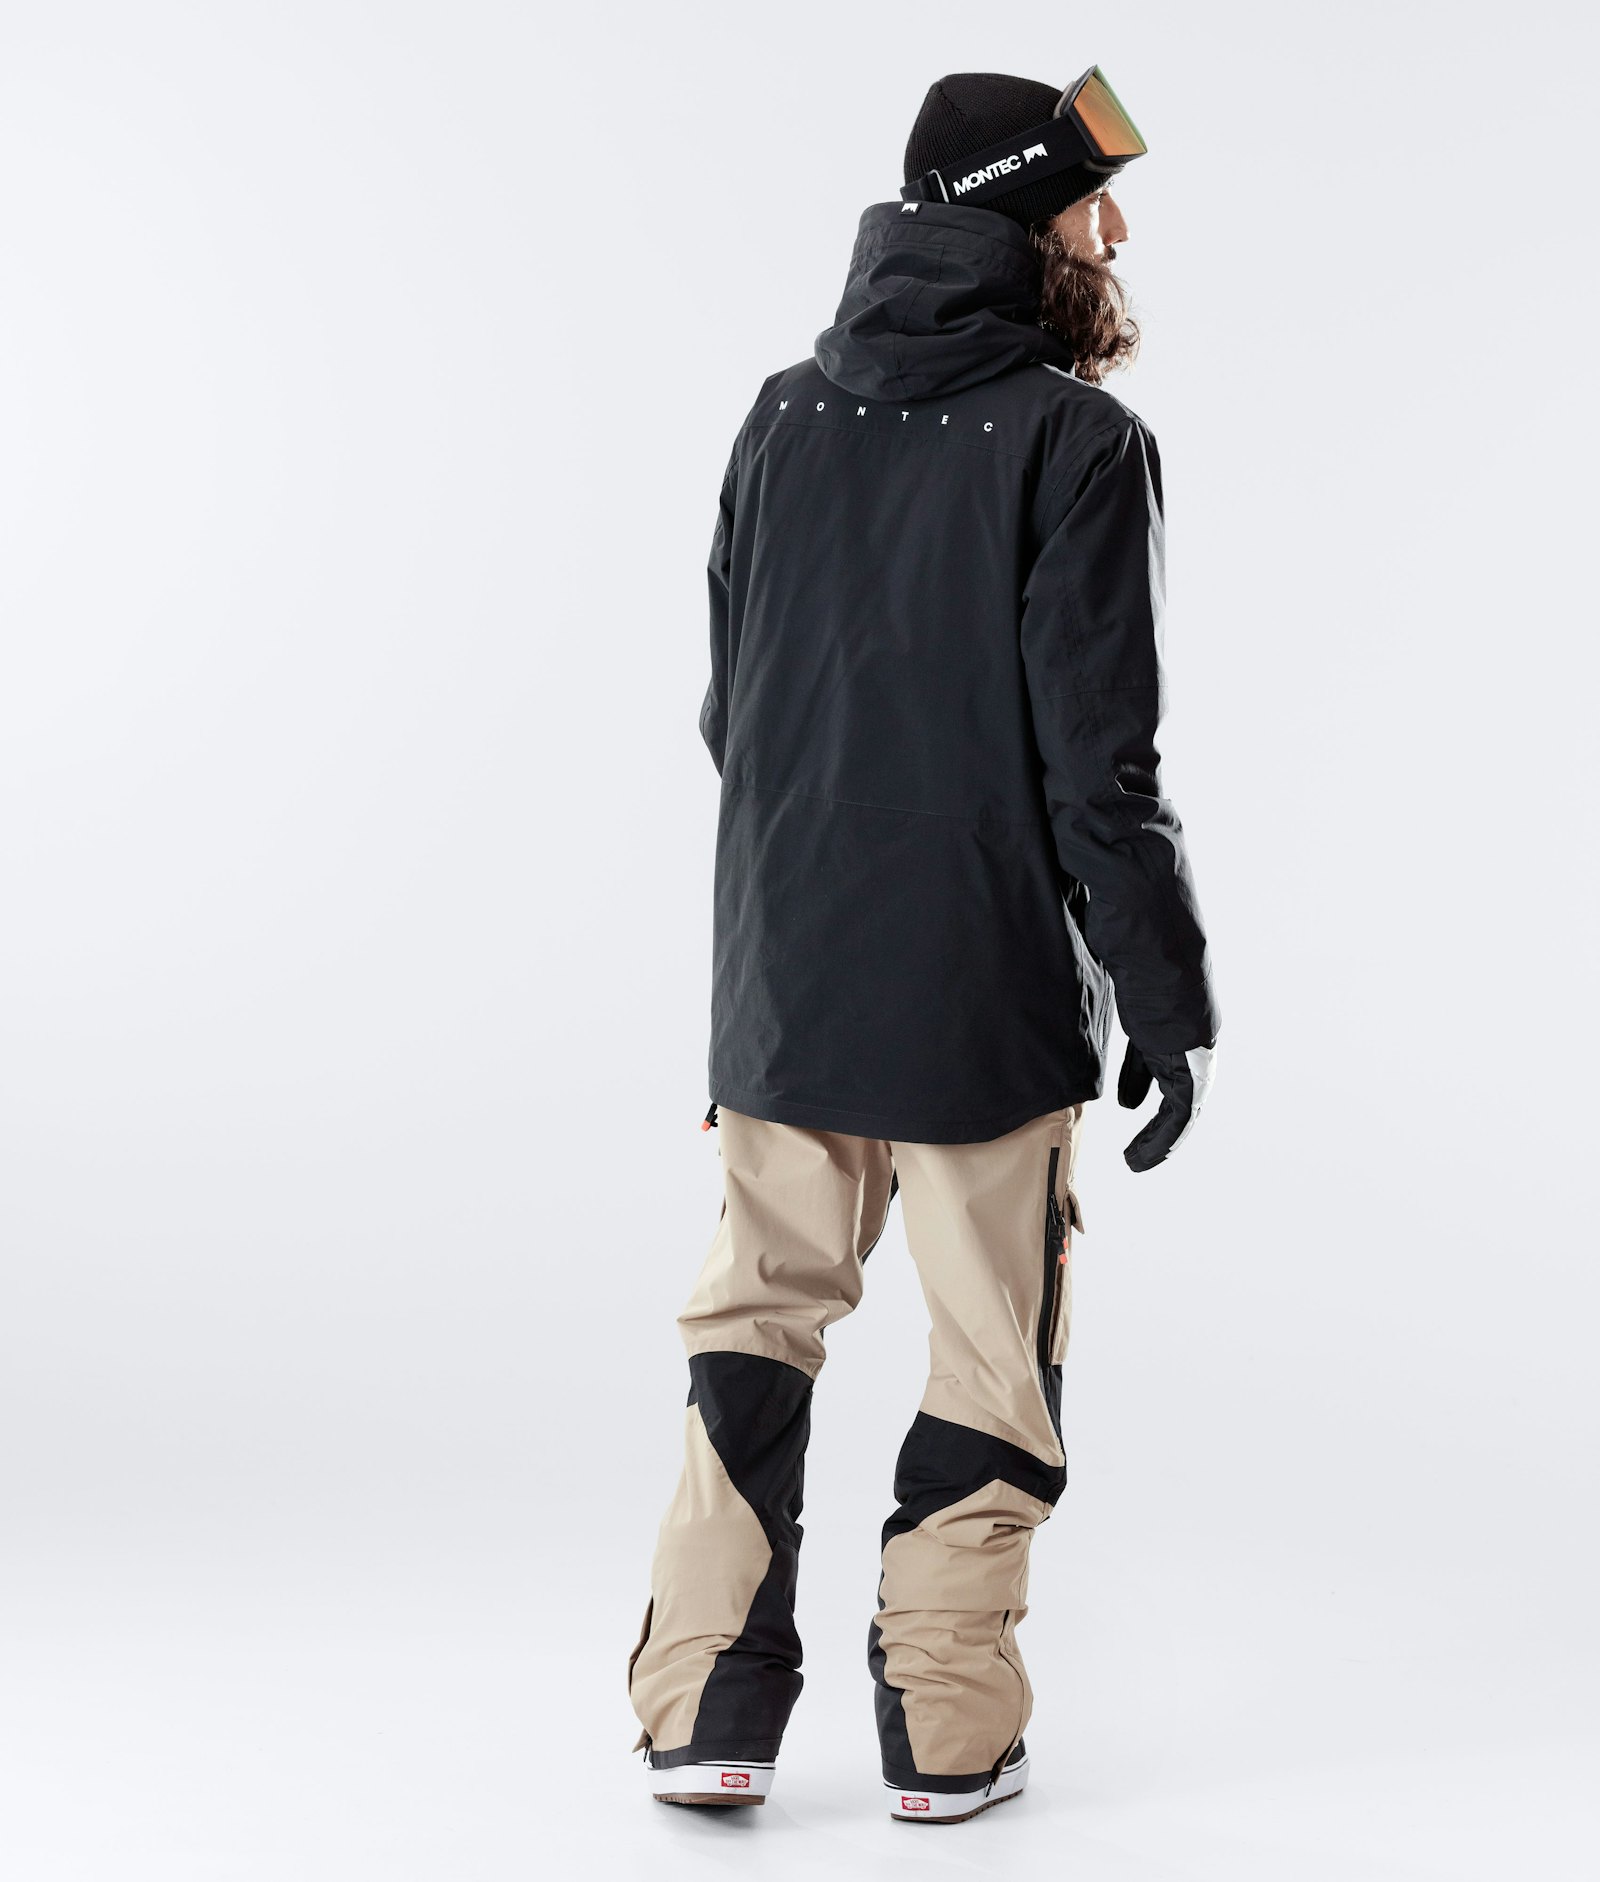 Fawk 2020 Snowboard jas Heren Black